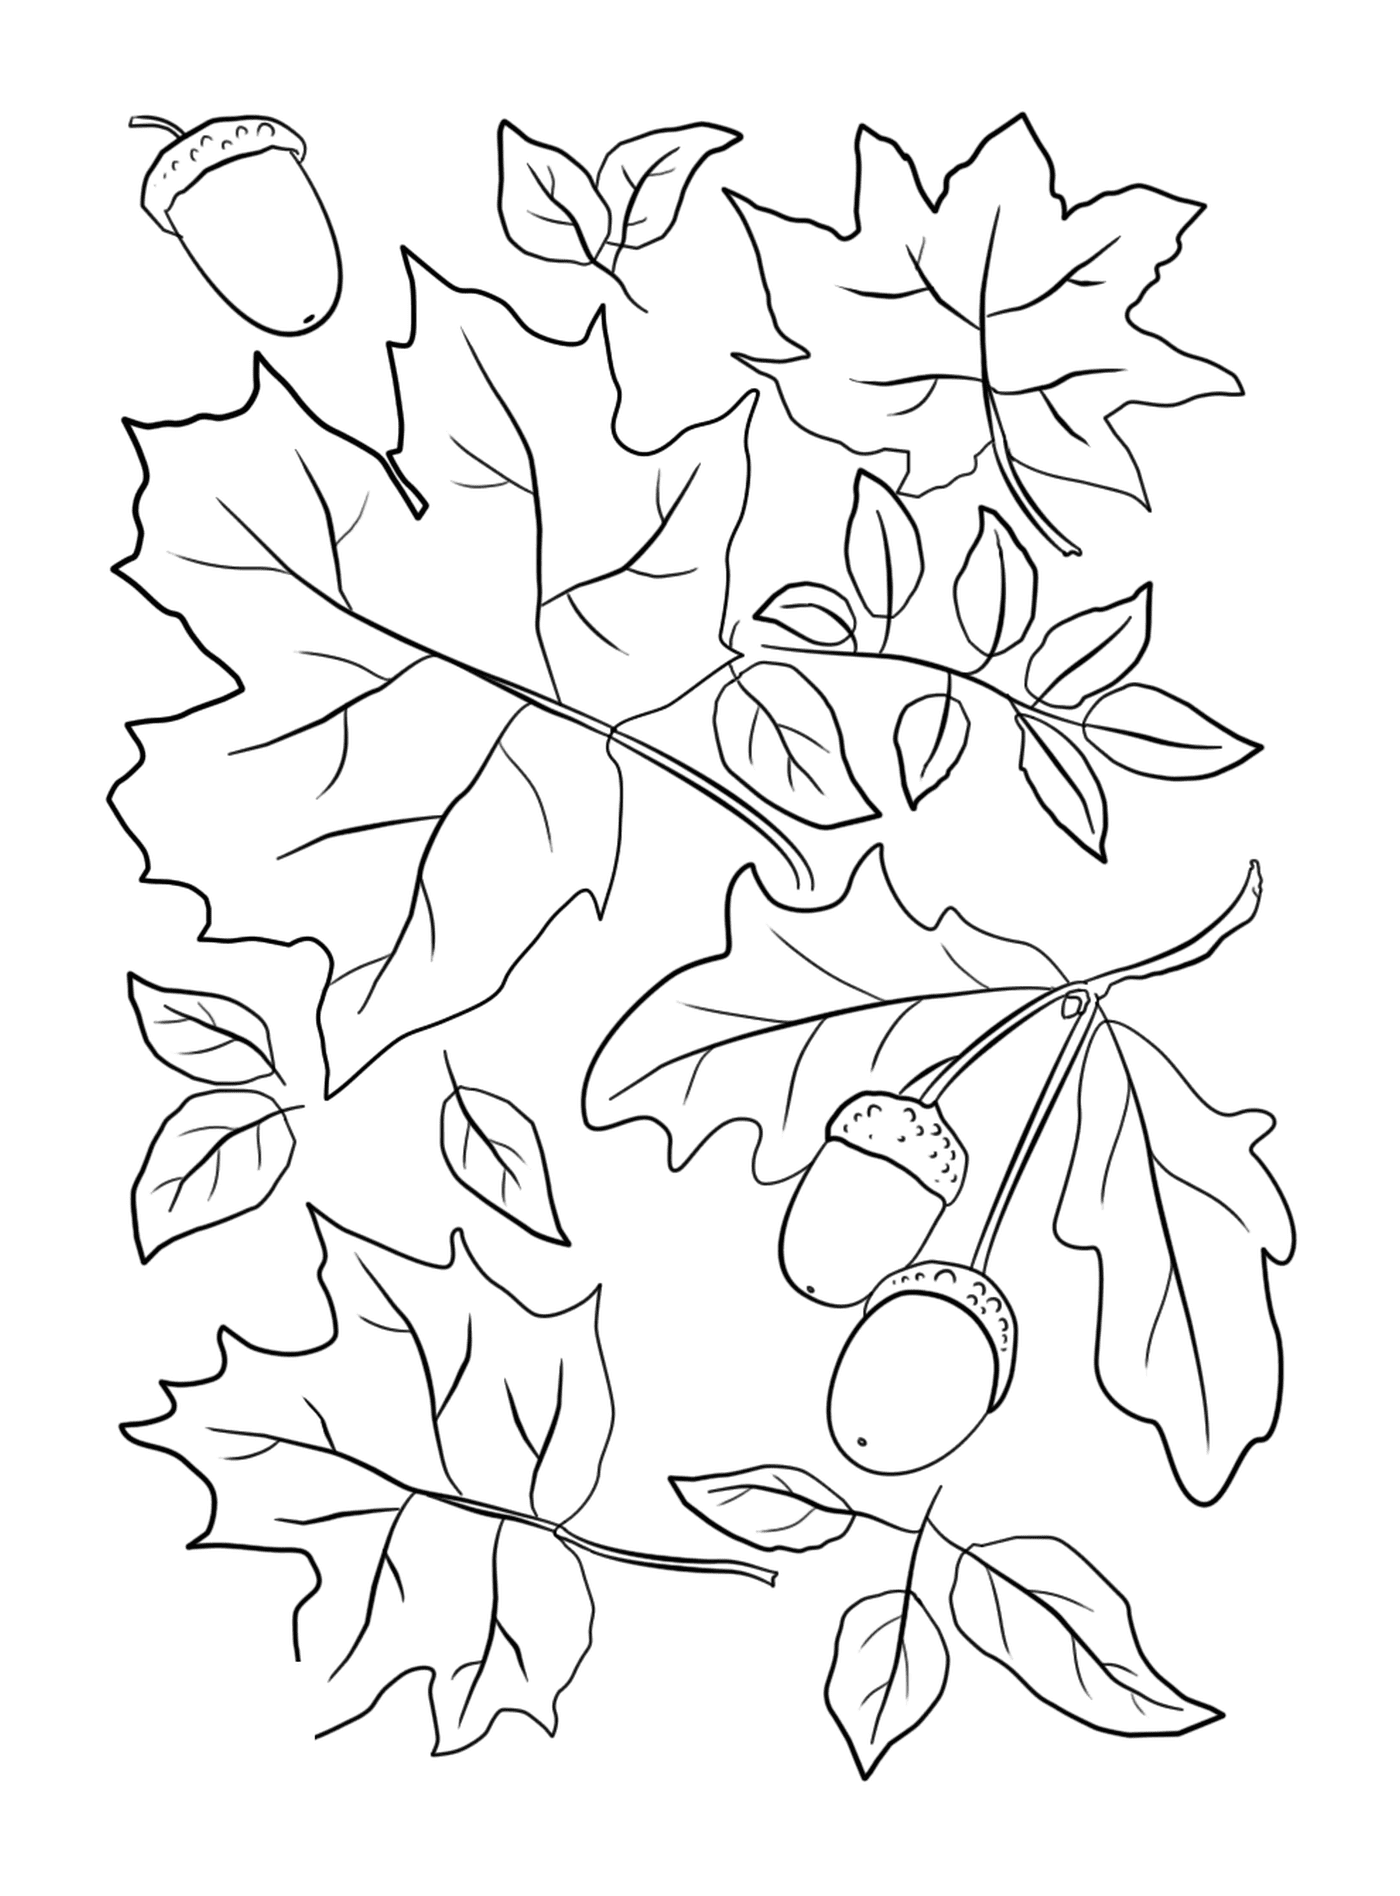  Blätter und Eicheln auf einem Herbstbaum 